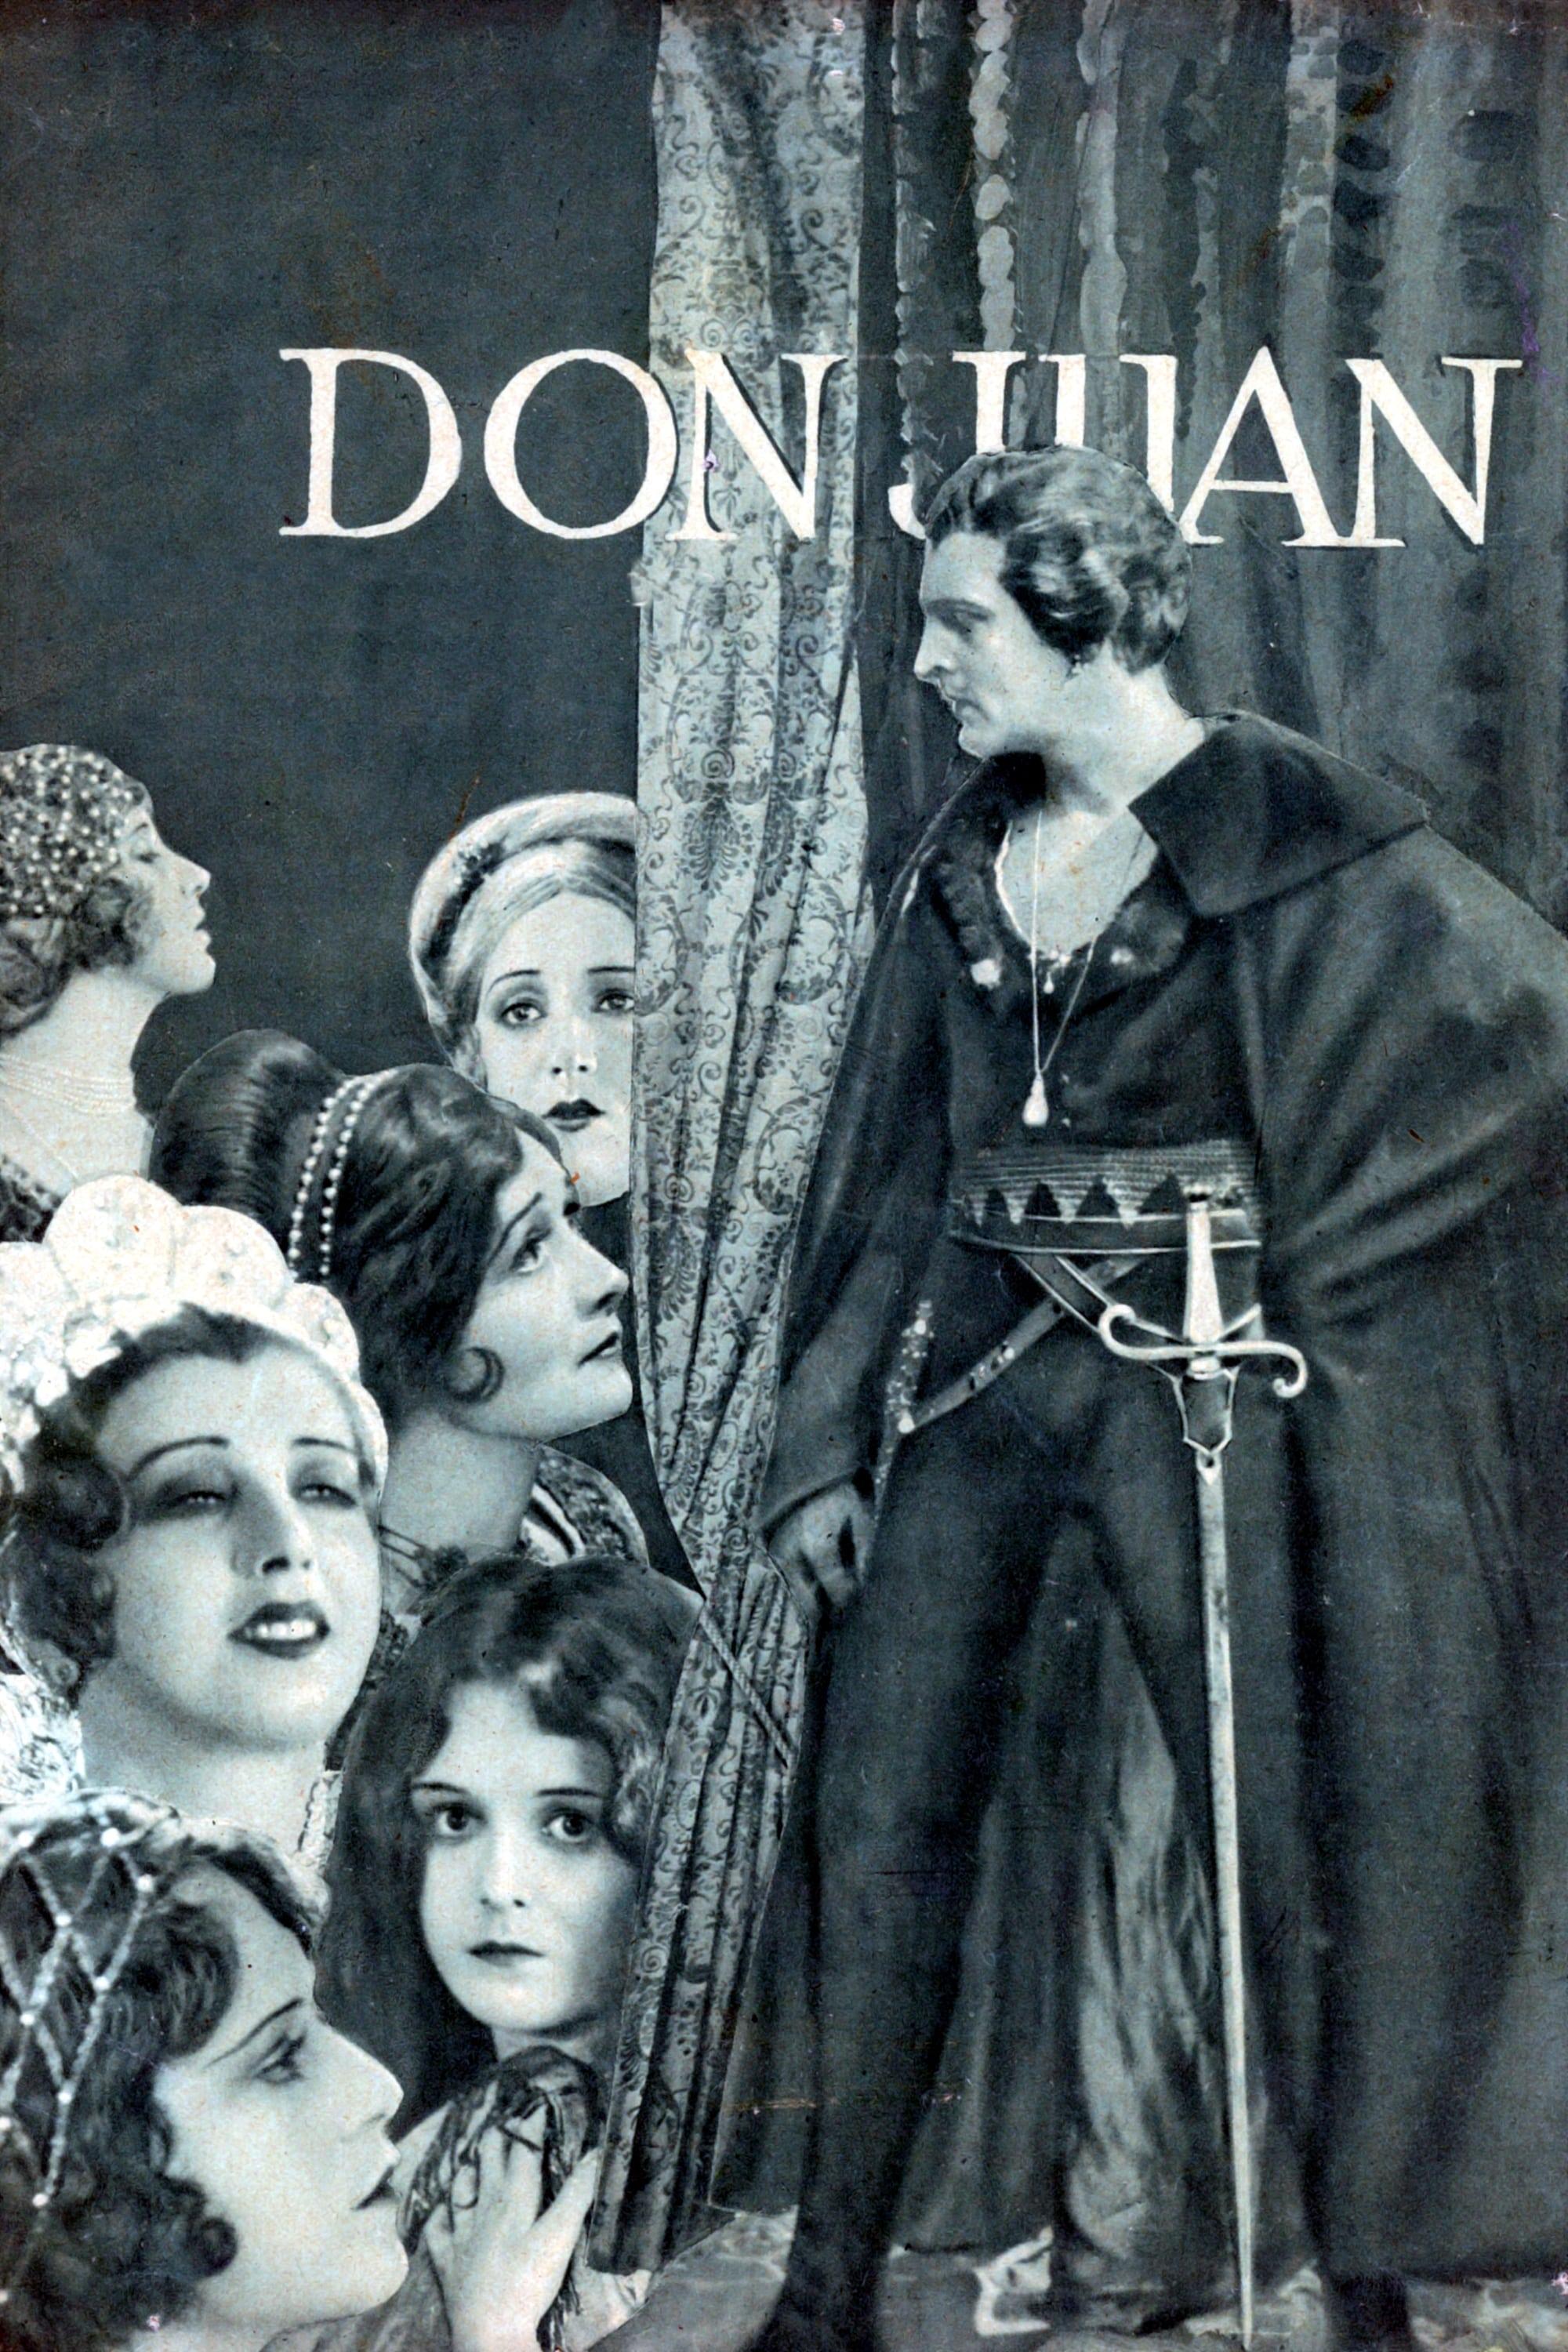 Don Juan poster